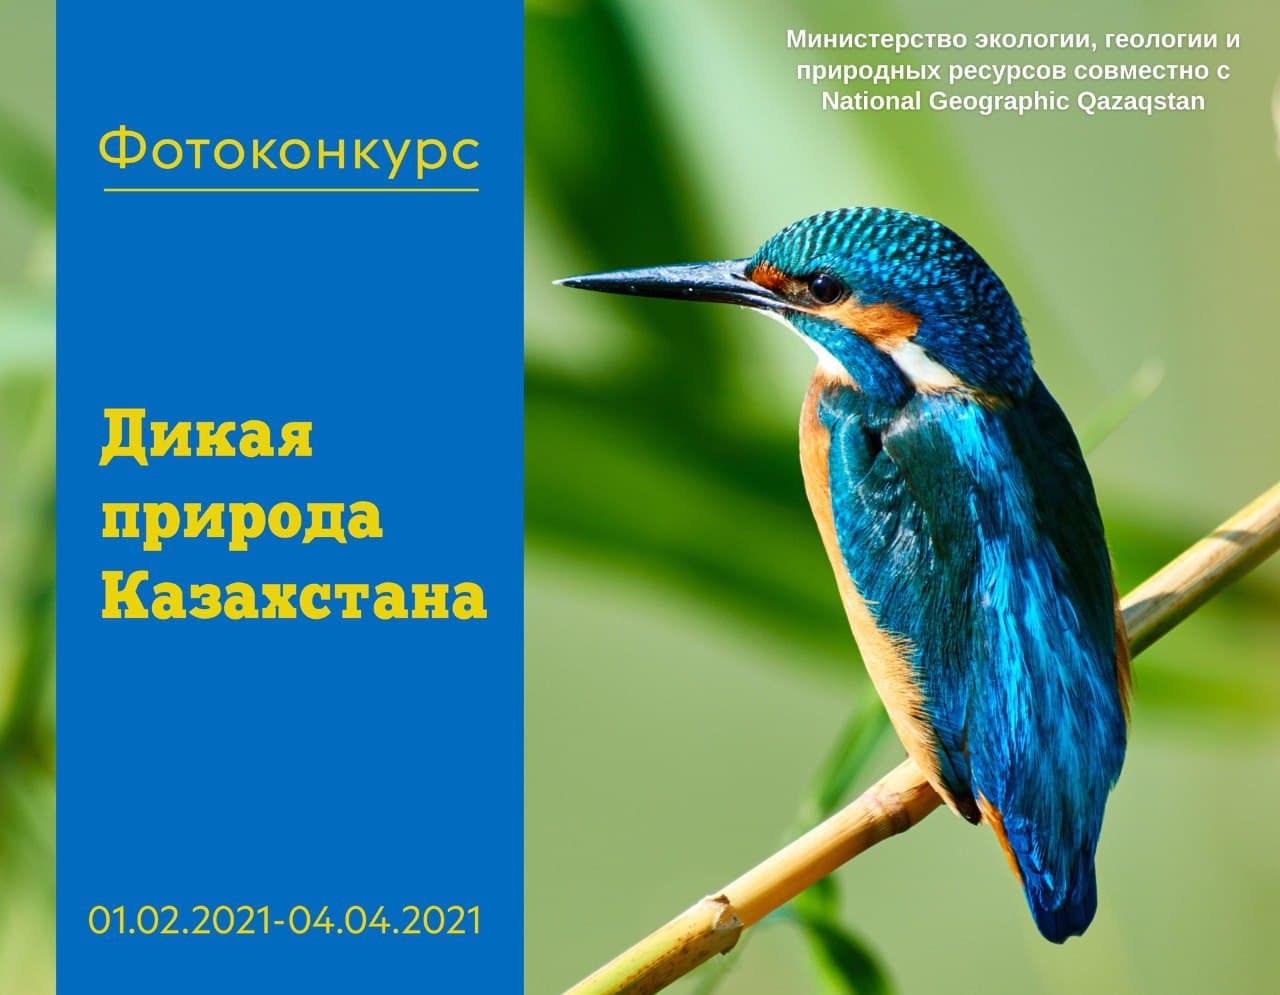 1,5 млн тенге составляет призовой фонд фотоконкурса "Дикая природа Казахстана"  